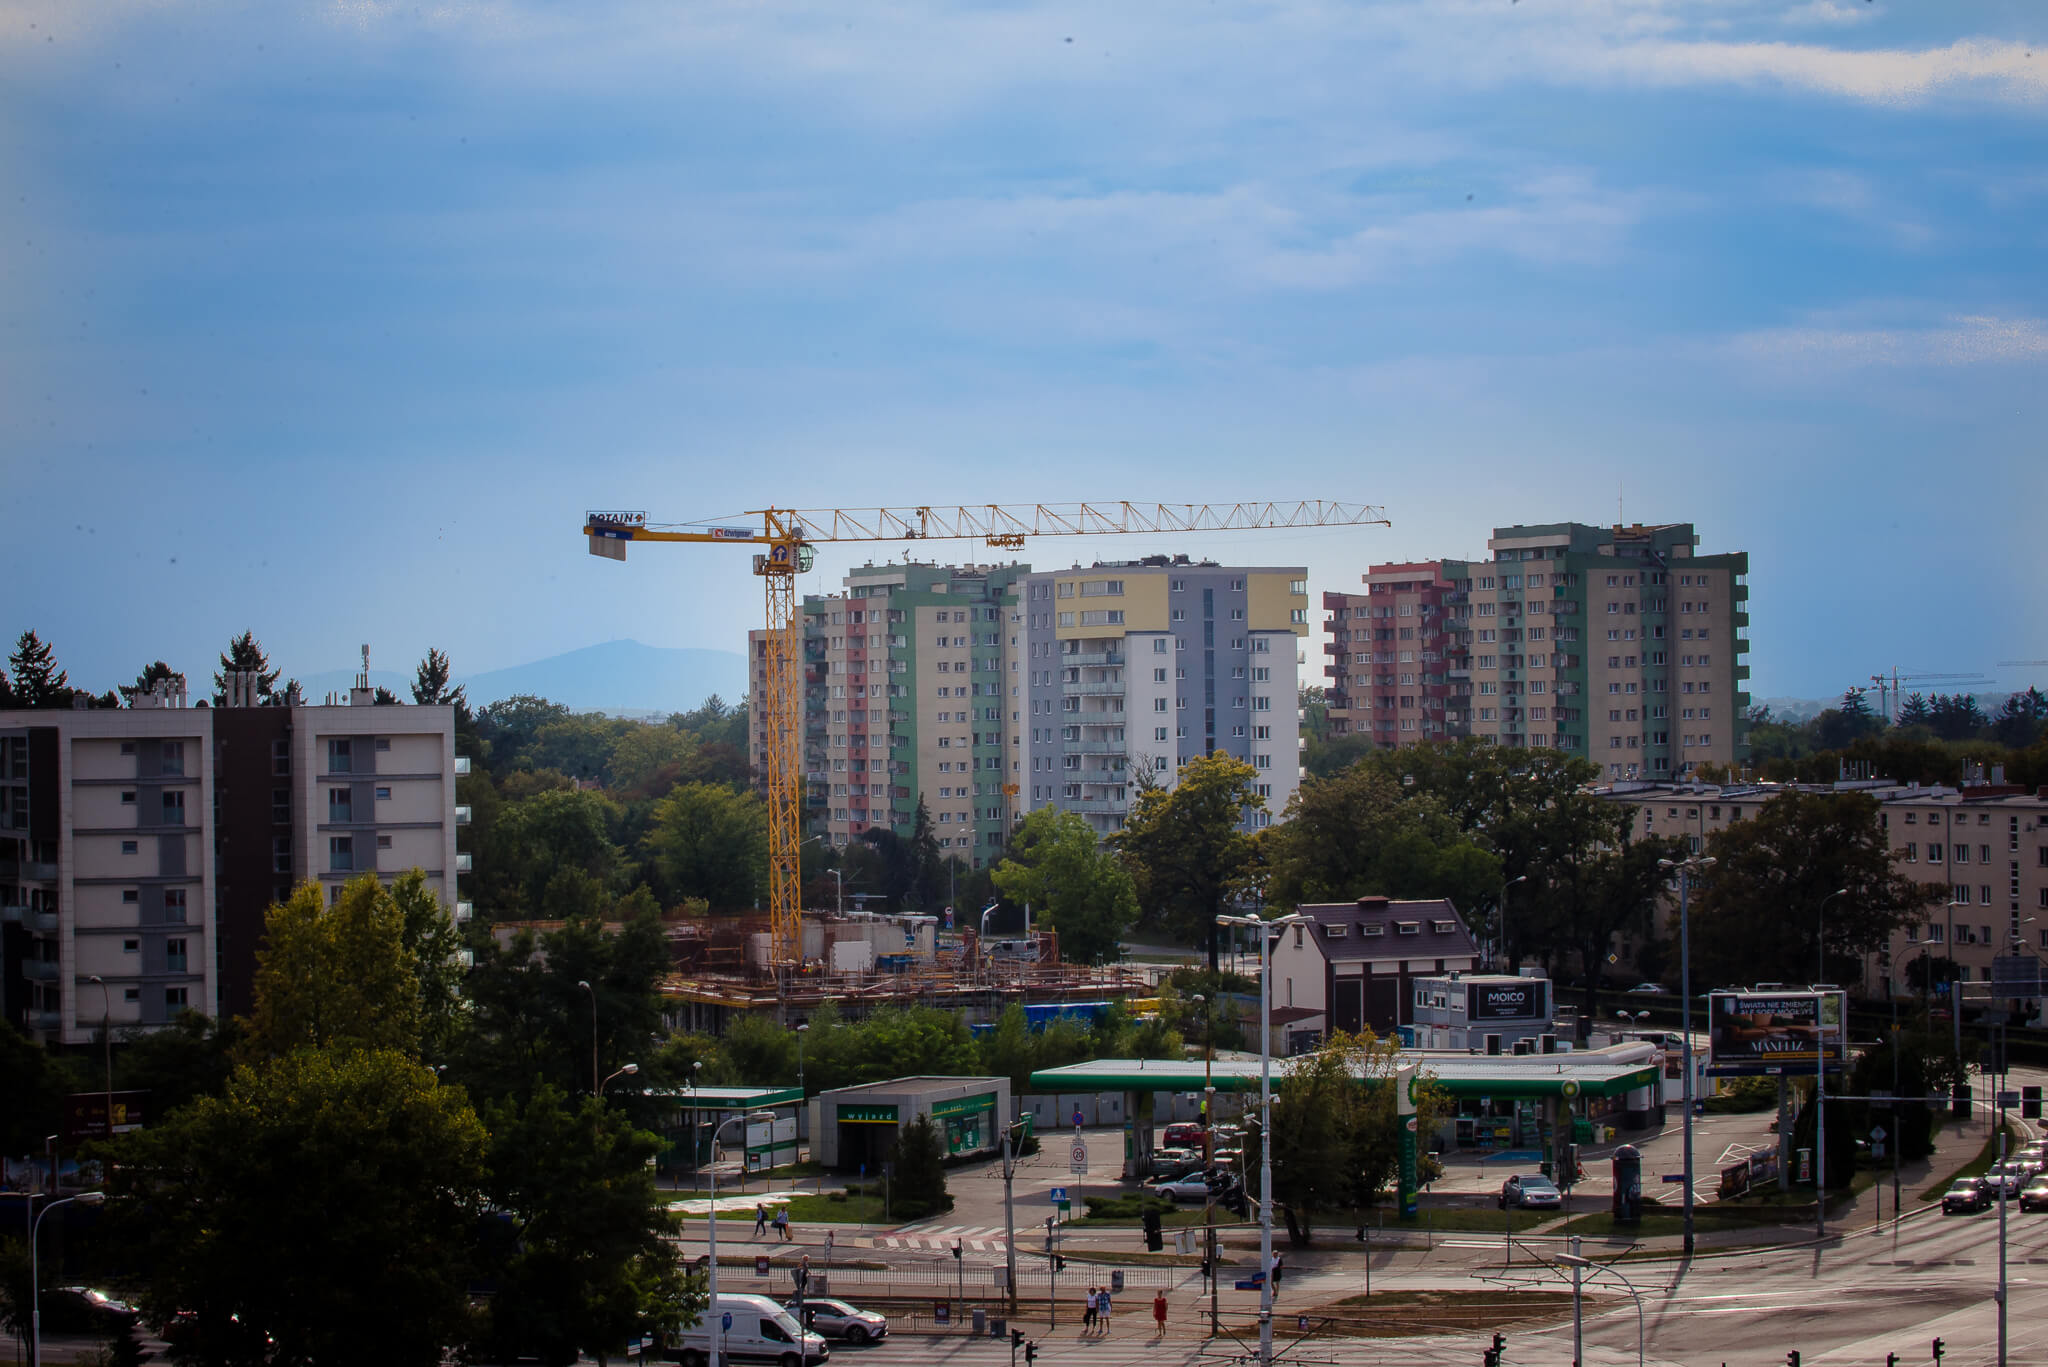 Budowa I2 Development, KPB, ul. Grabiszyńska, 2019